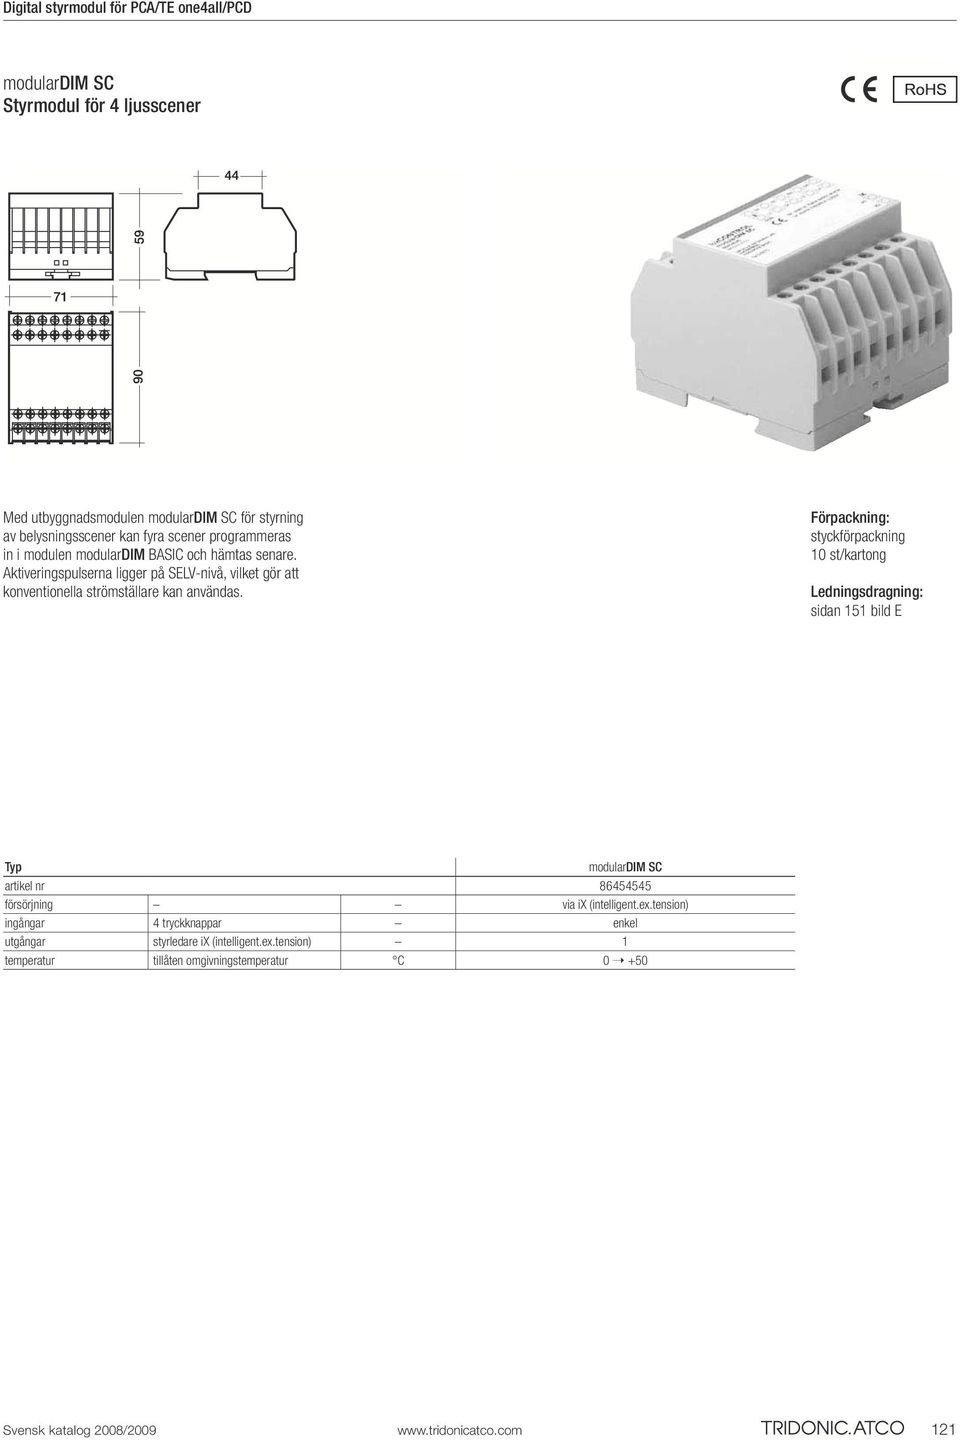 Förpackning: styckförpackning 10 st/kartong Ledningsdragning: sidan 151 bild E Typ modulardim SC artikel nr 86454545 försörjning via ix (intelligent.ex.